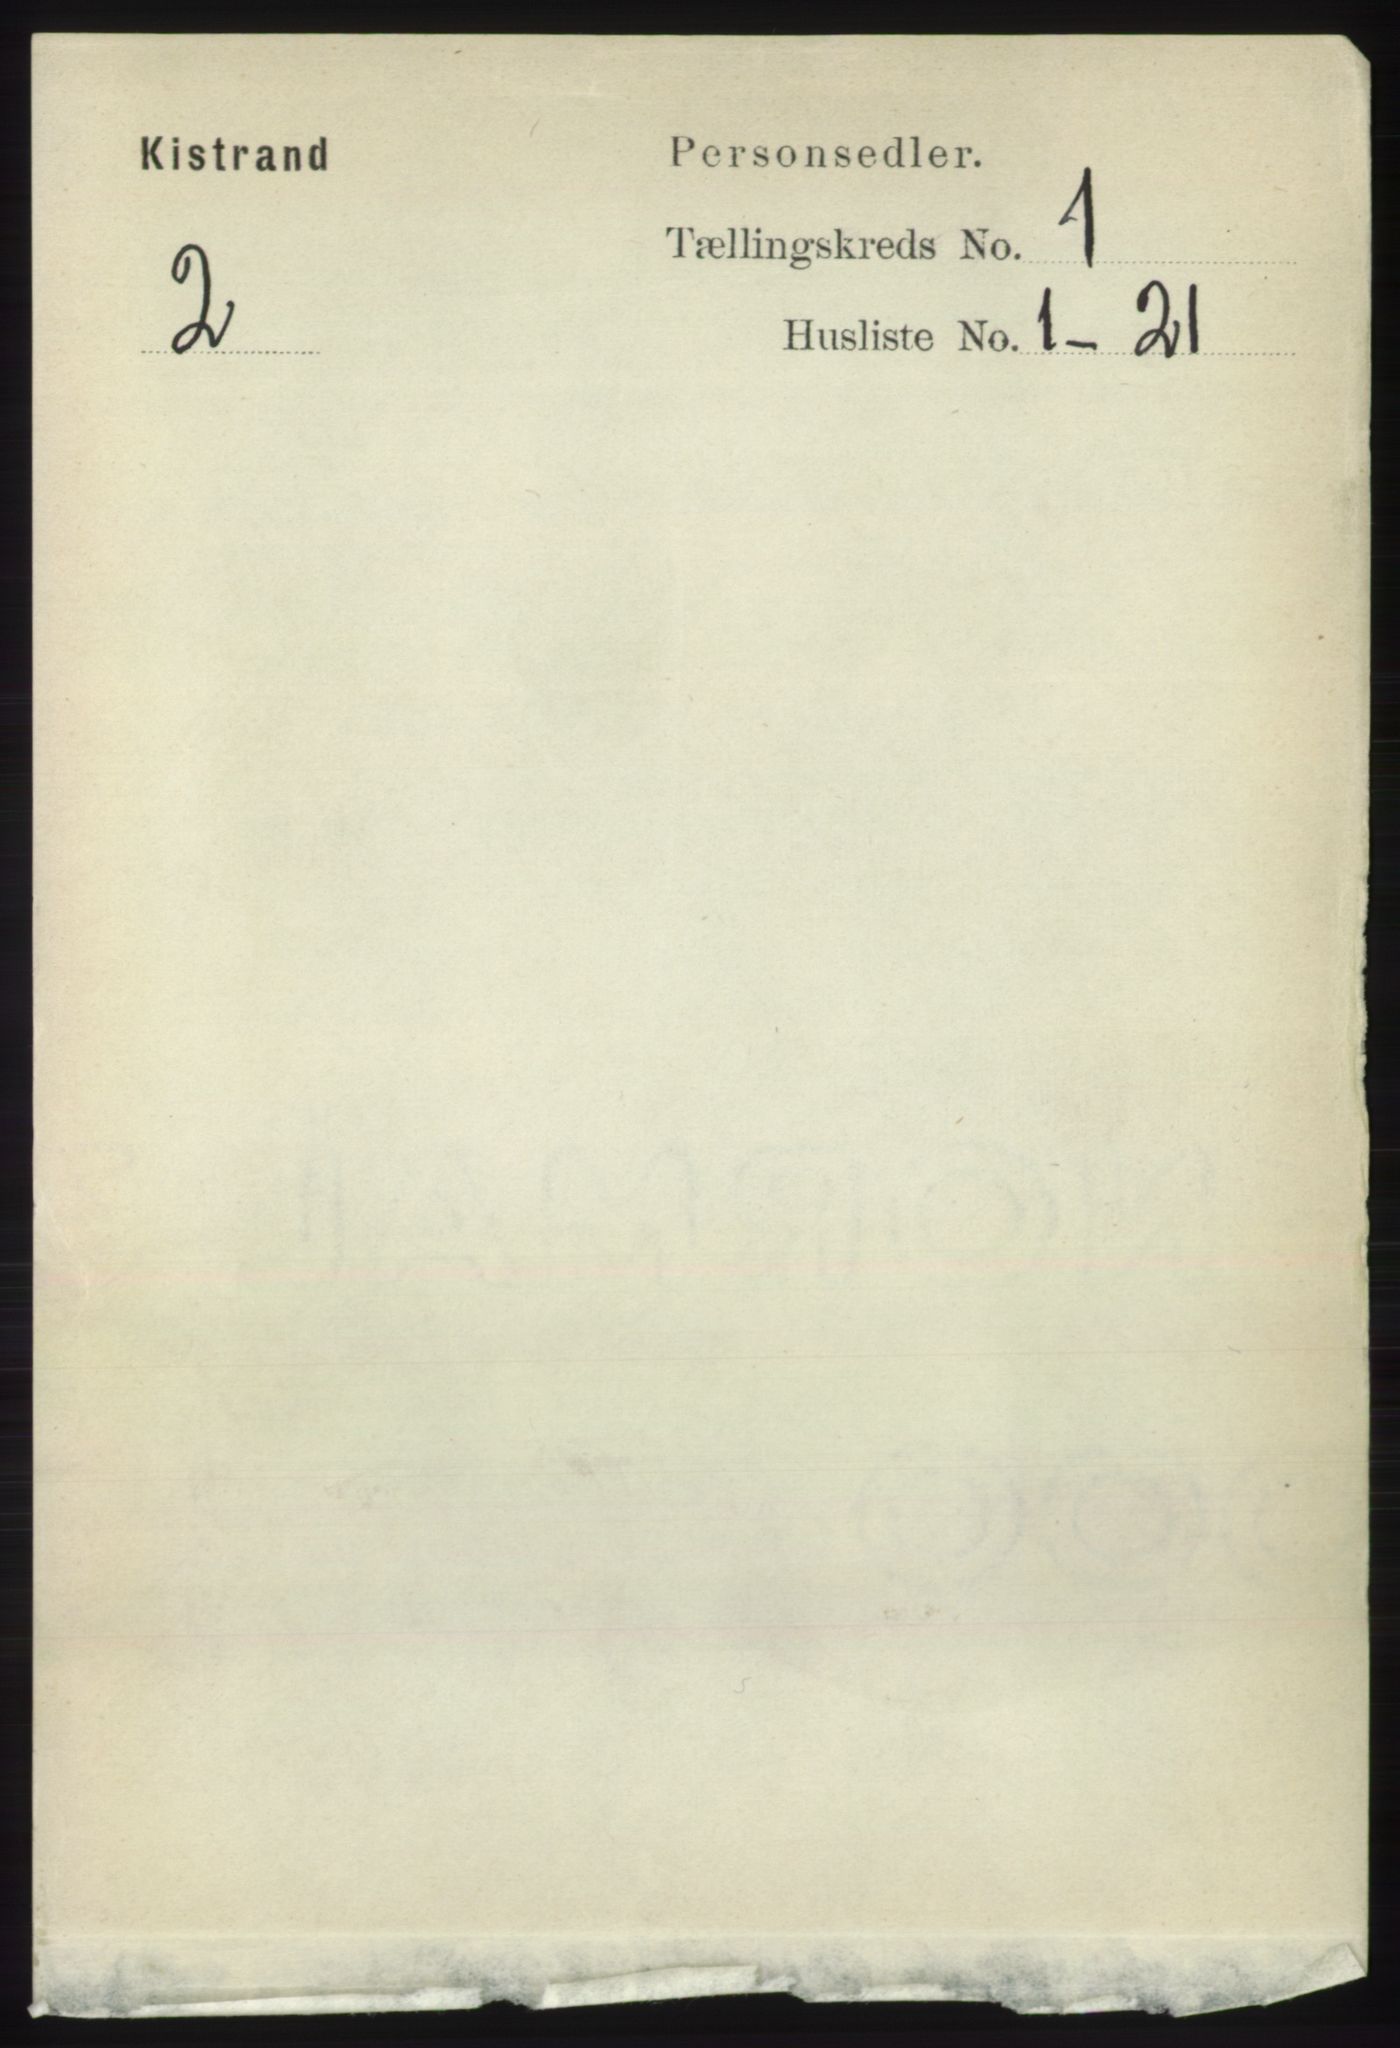 RA, Folketelling 1891 for 2020 Kistrand herred, 1891, s. 84